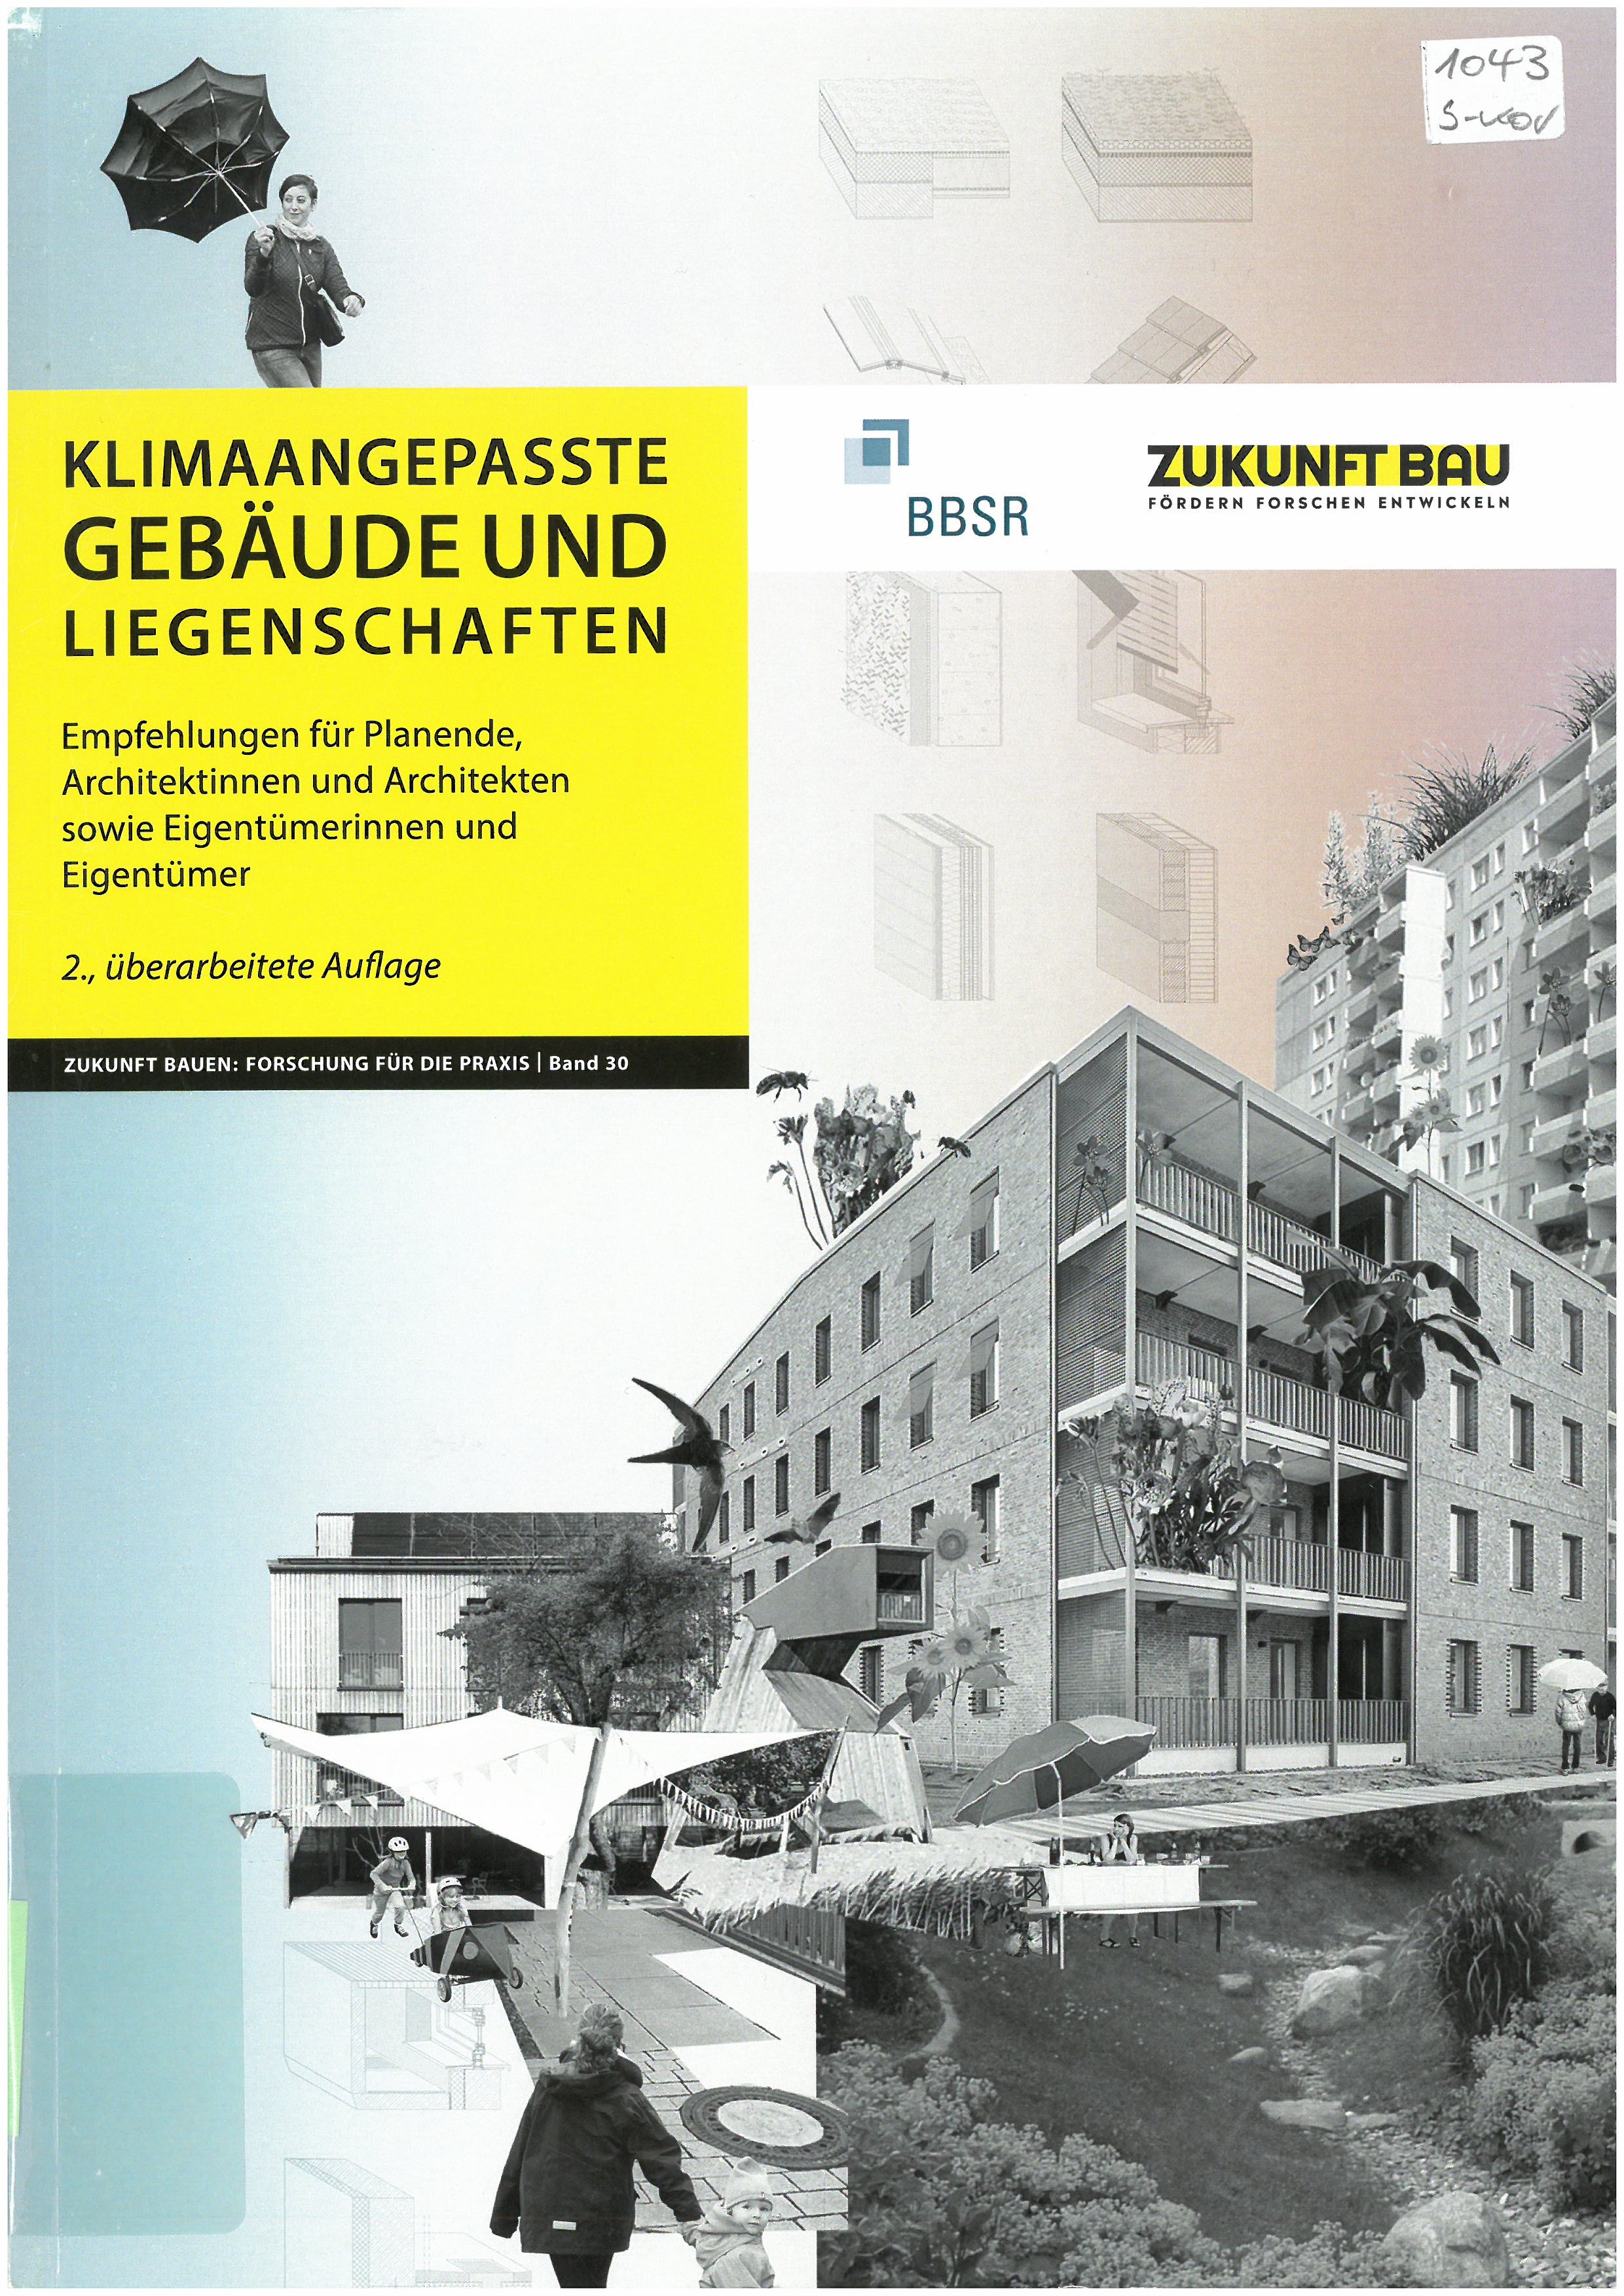 Klimaangepasste Gebäude und Liegenschaften : Empfehlungen für Planende, Architektinnen und Architekten sowie Eigentümerinnen und Eigentümer